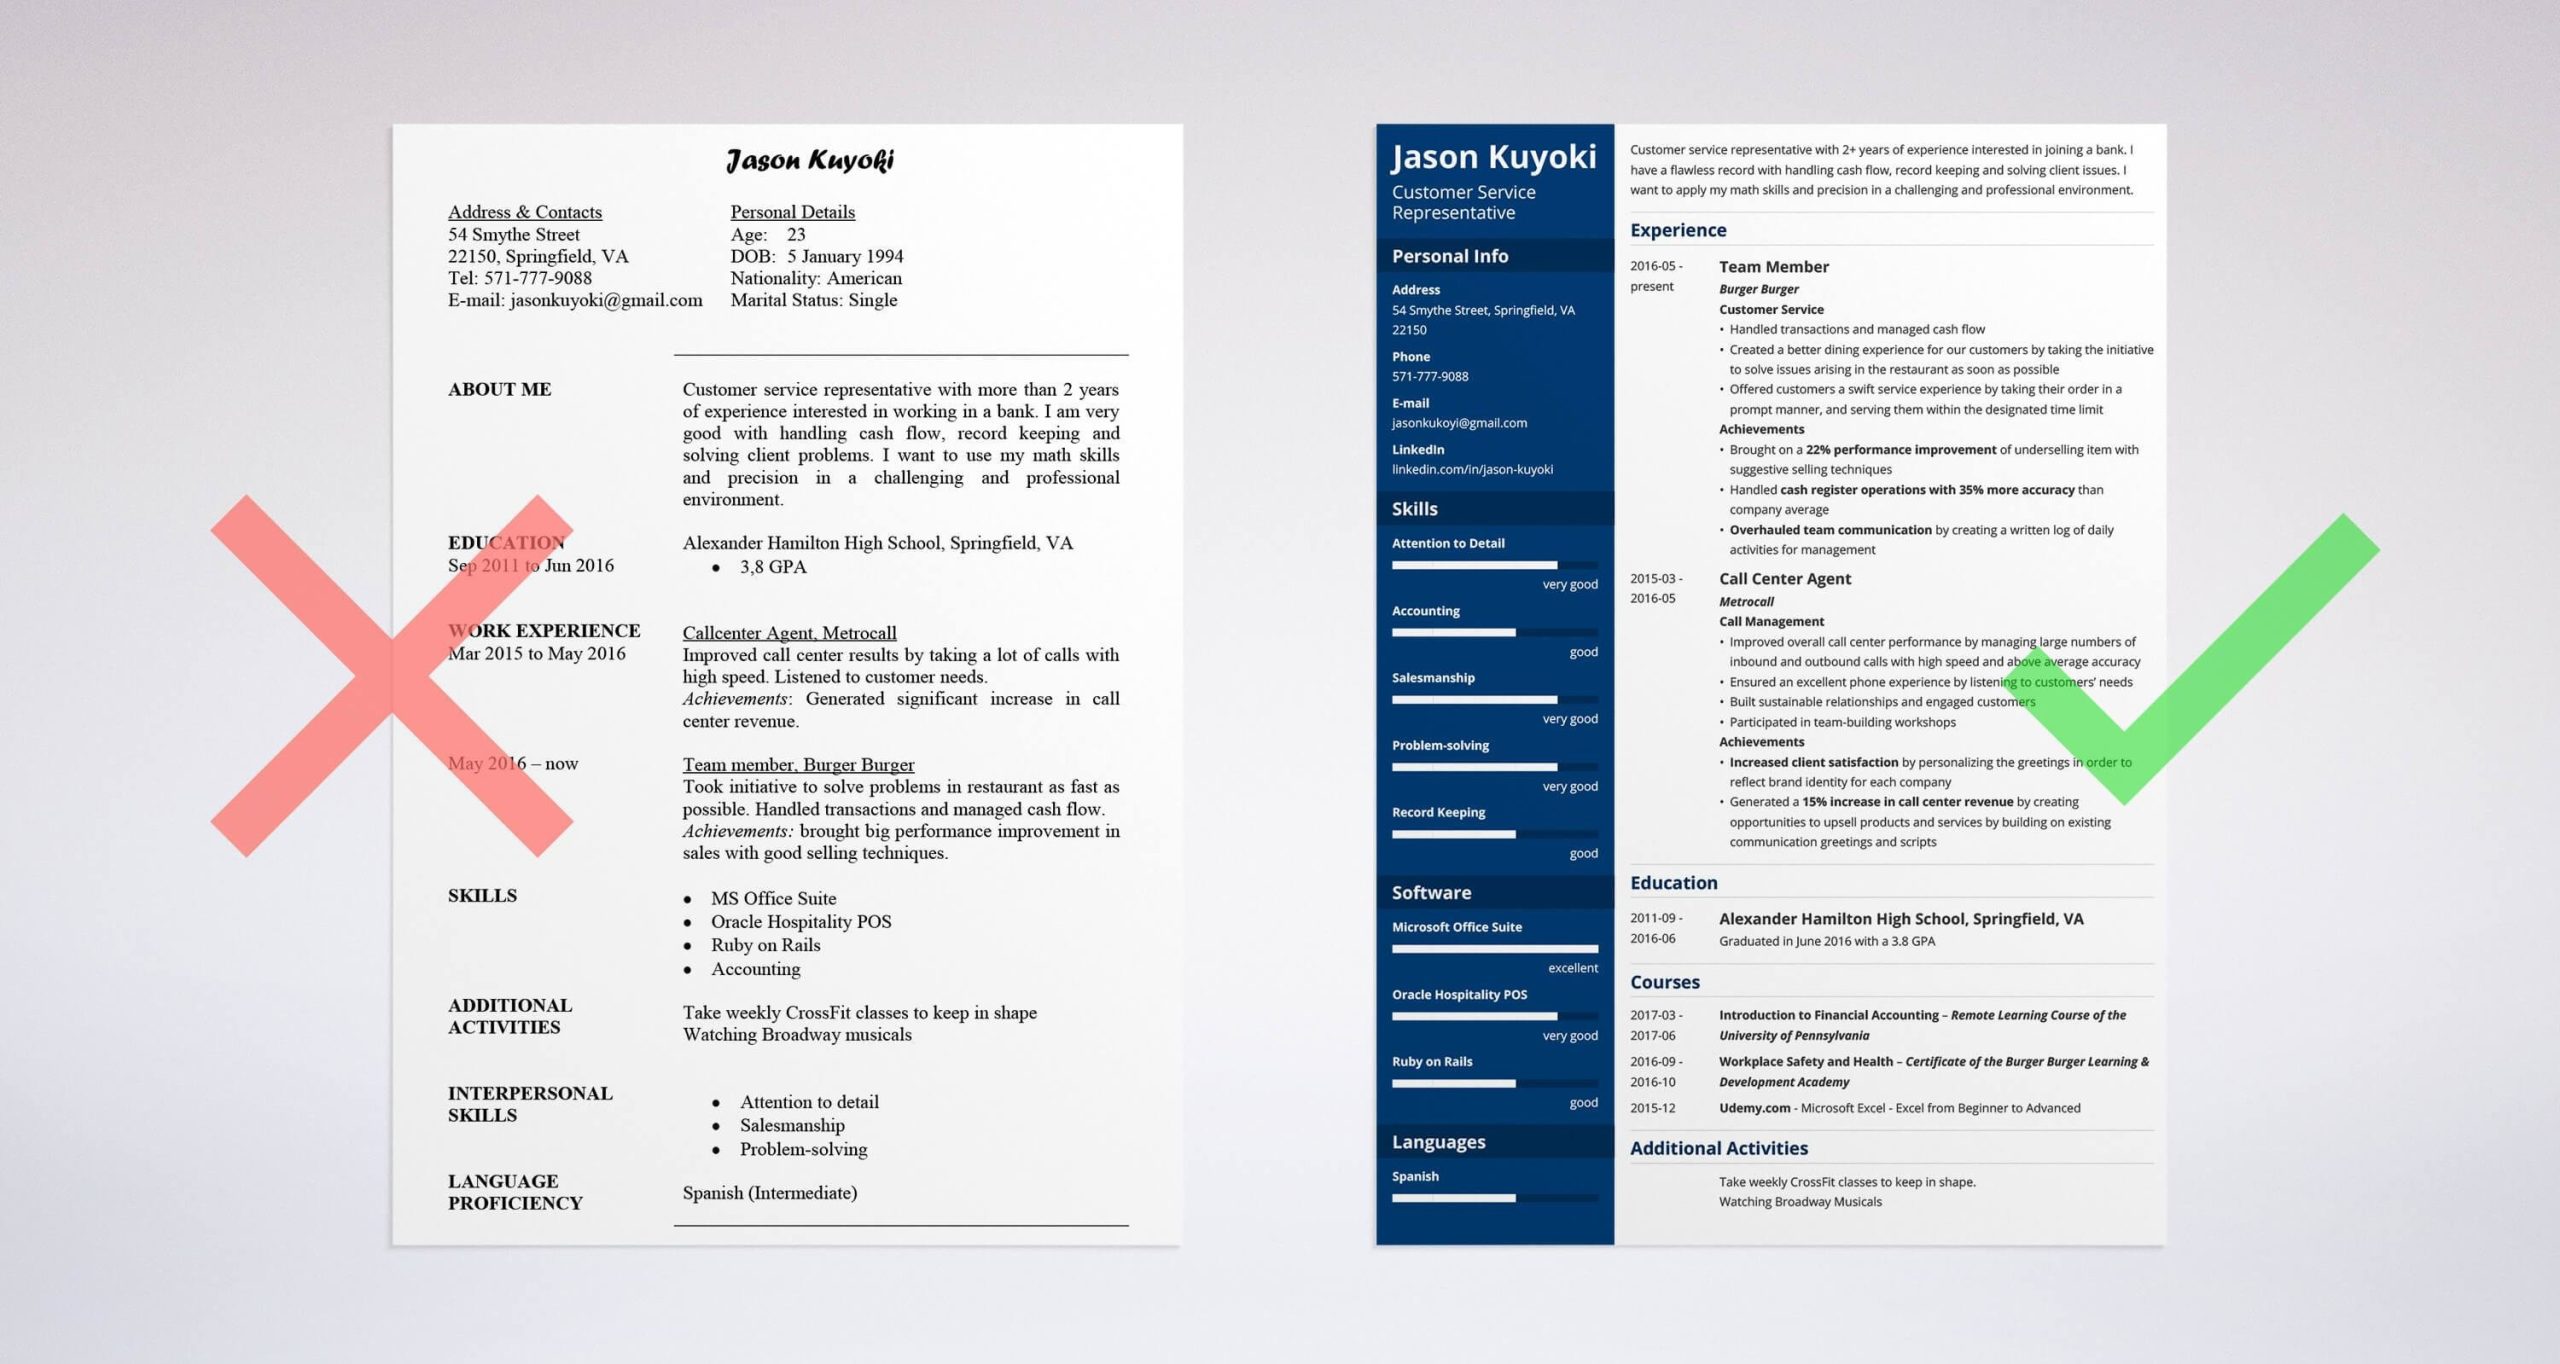 Sample Resume Skills for Bank Teller Bank Teller Resume Examples (lancarrezekiq Bank Teller Skills)